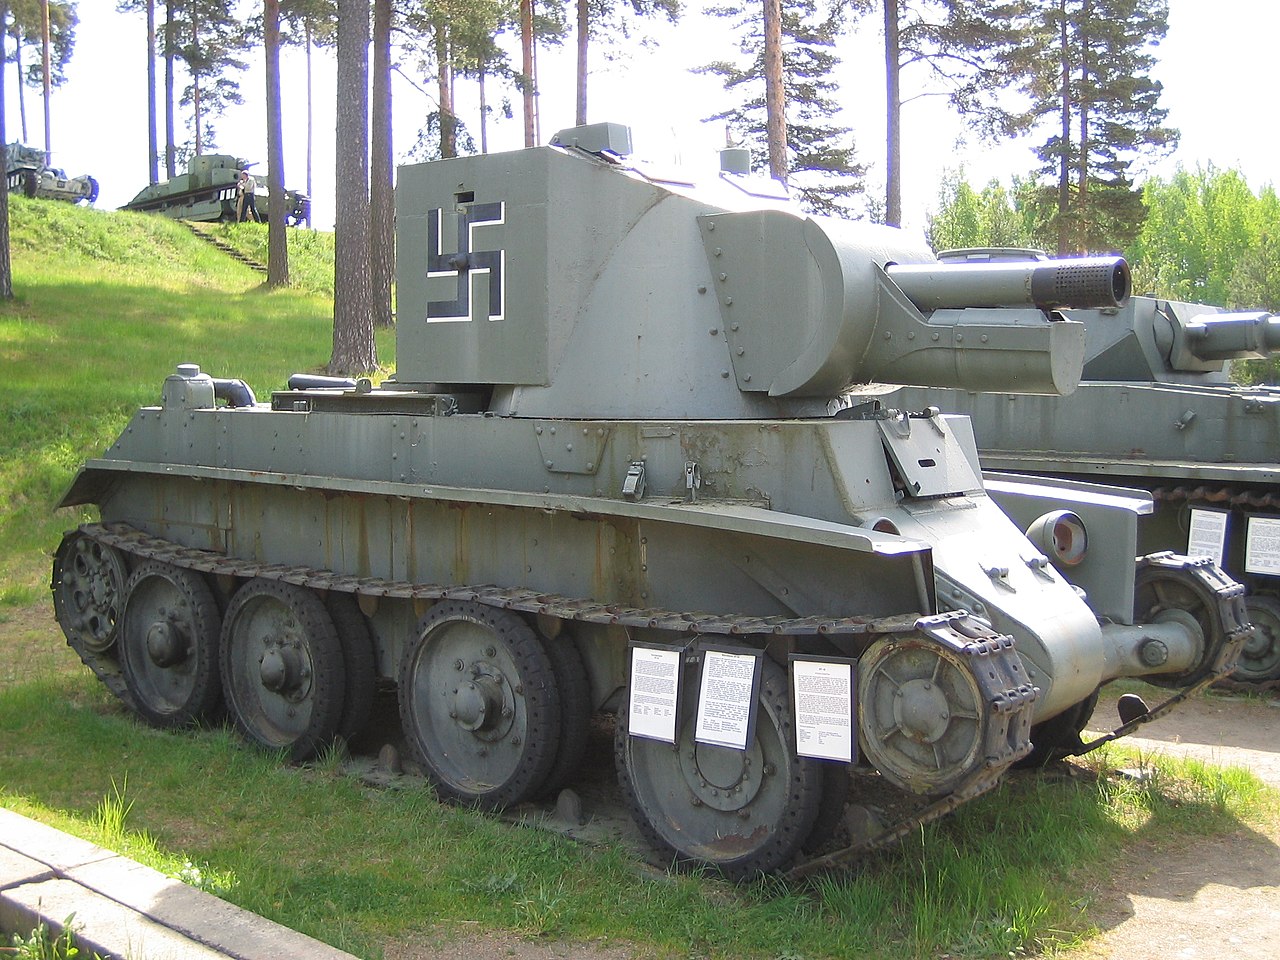 1280px-BT-42_Parola_tank_museum.jpg